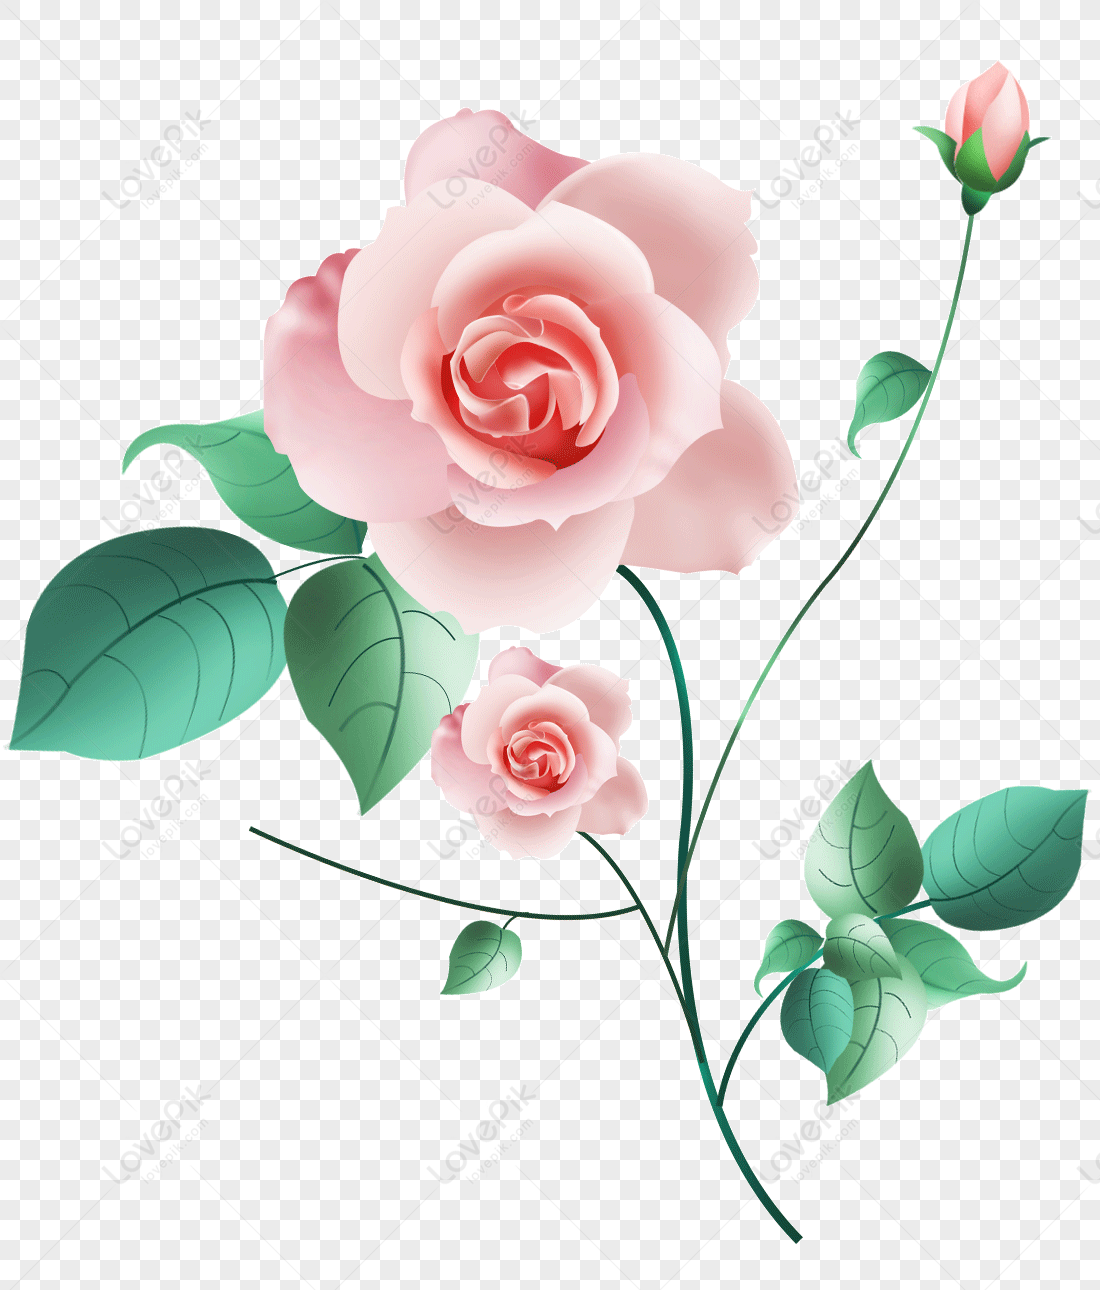 Hãy ngắm nhìn một bông hoa hồng màu hồng tuyệt đẹp này. Sắc hồng tươi tắn tạo nên một vẻ đẹp dịu dàng và tinh khiết. Hãy cùng nhau chiêm ngưỡng hình ảnh đầy uyển chuyển này.